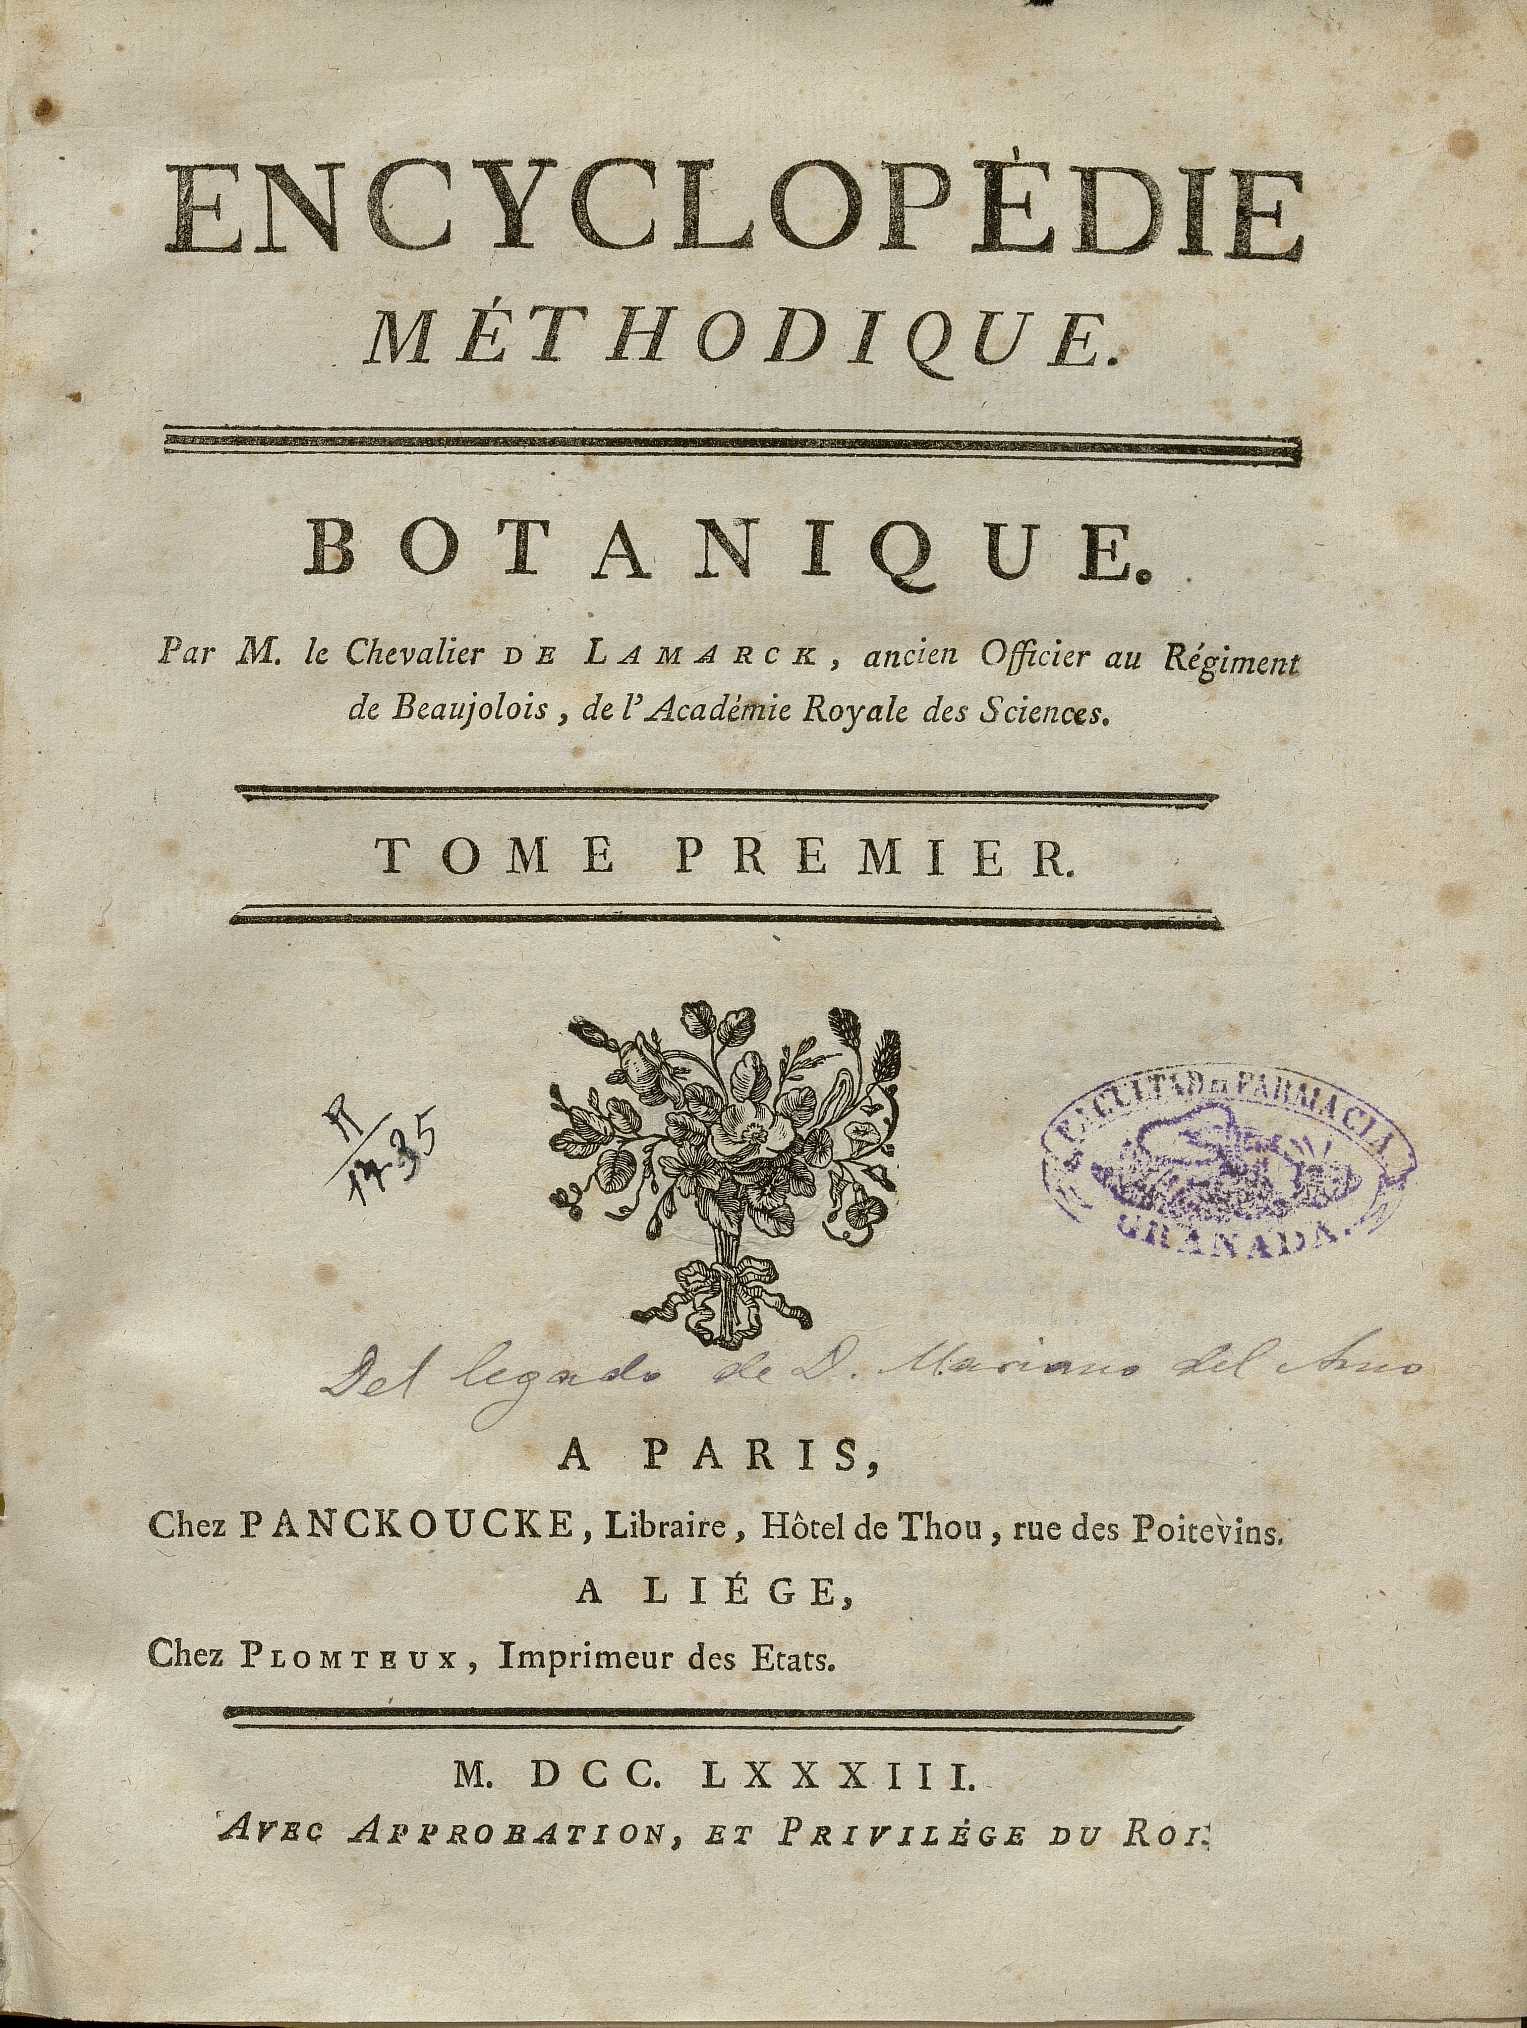 Lamarck, Jean-Baptiste de Monet de, 1744-1829